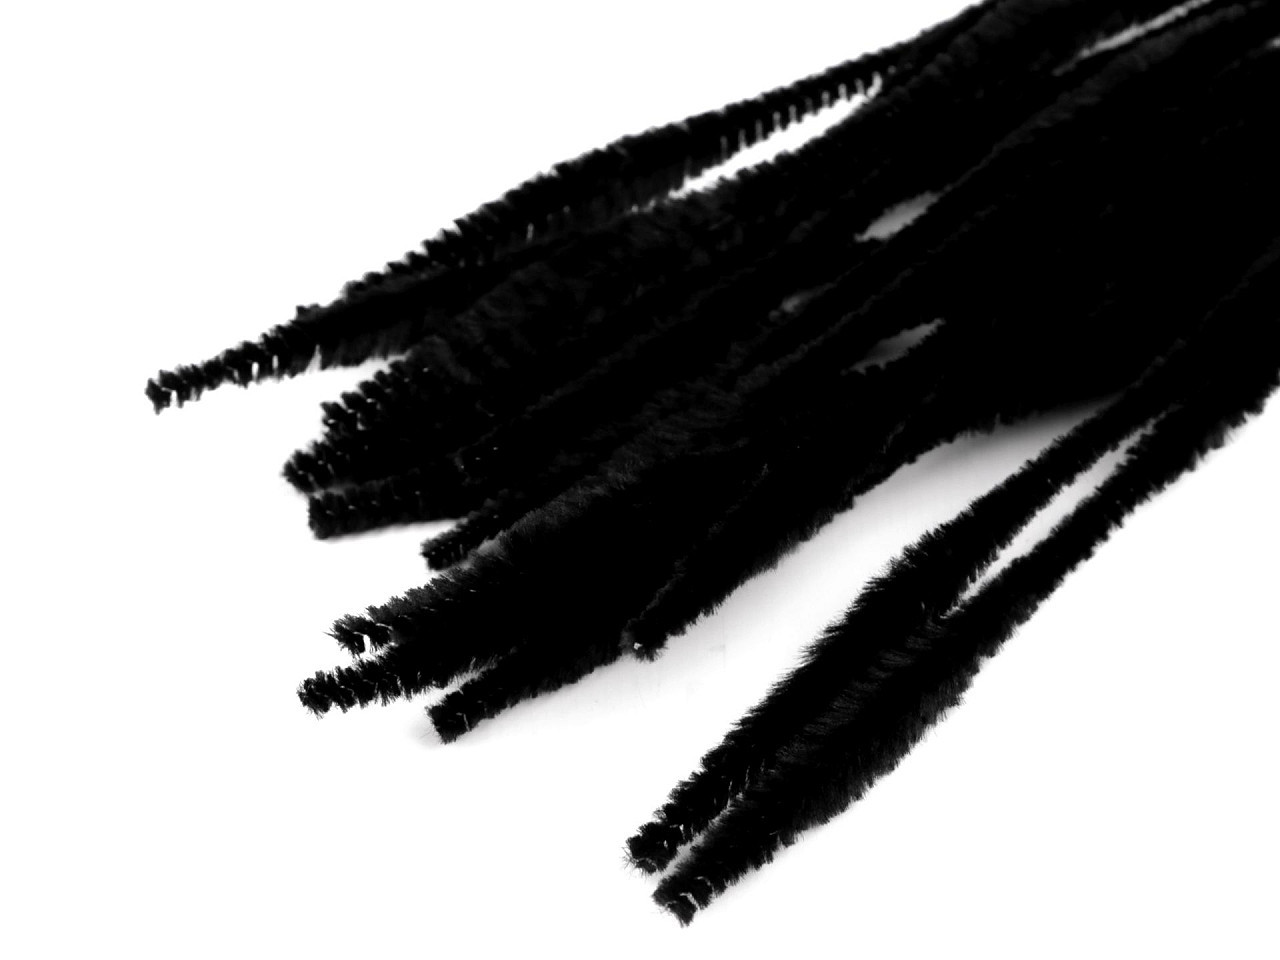 Chlupaté modelovací drátky Ø5-10 mm délka 30 cm, barva 2 černá